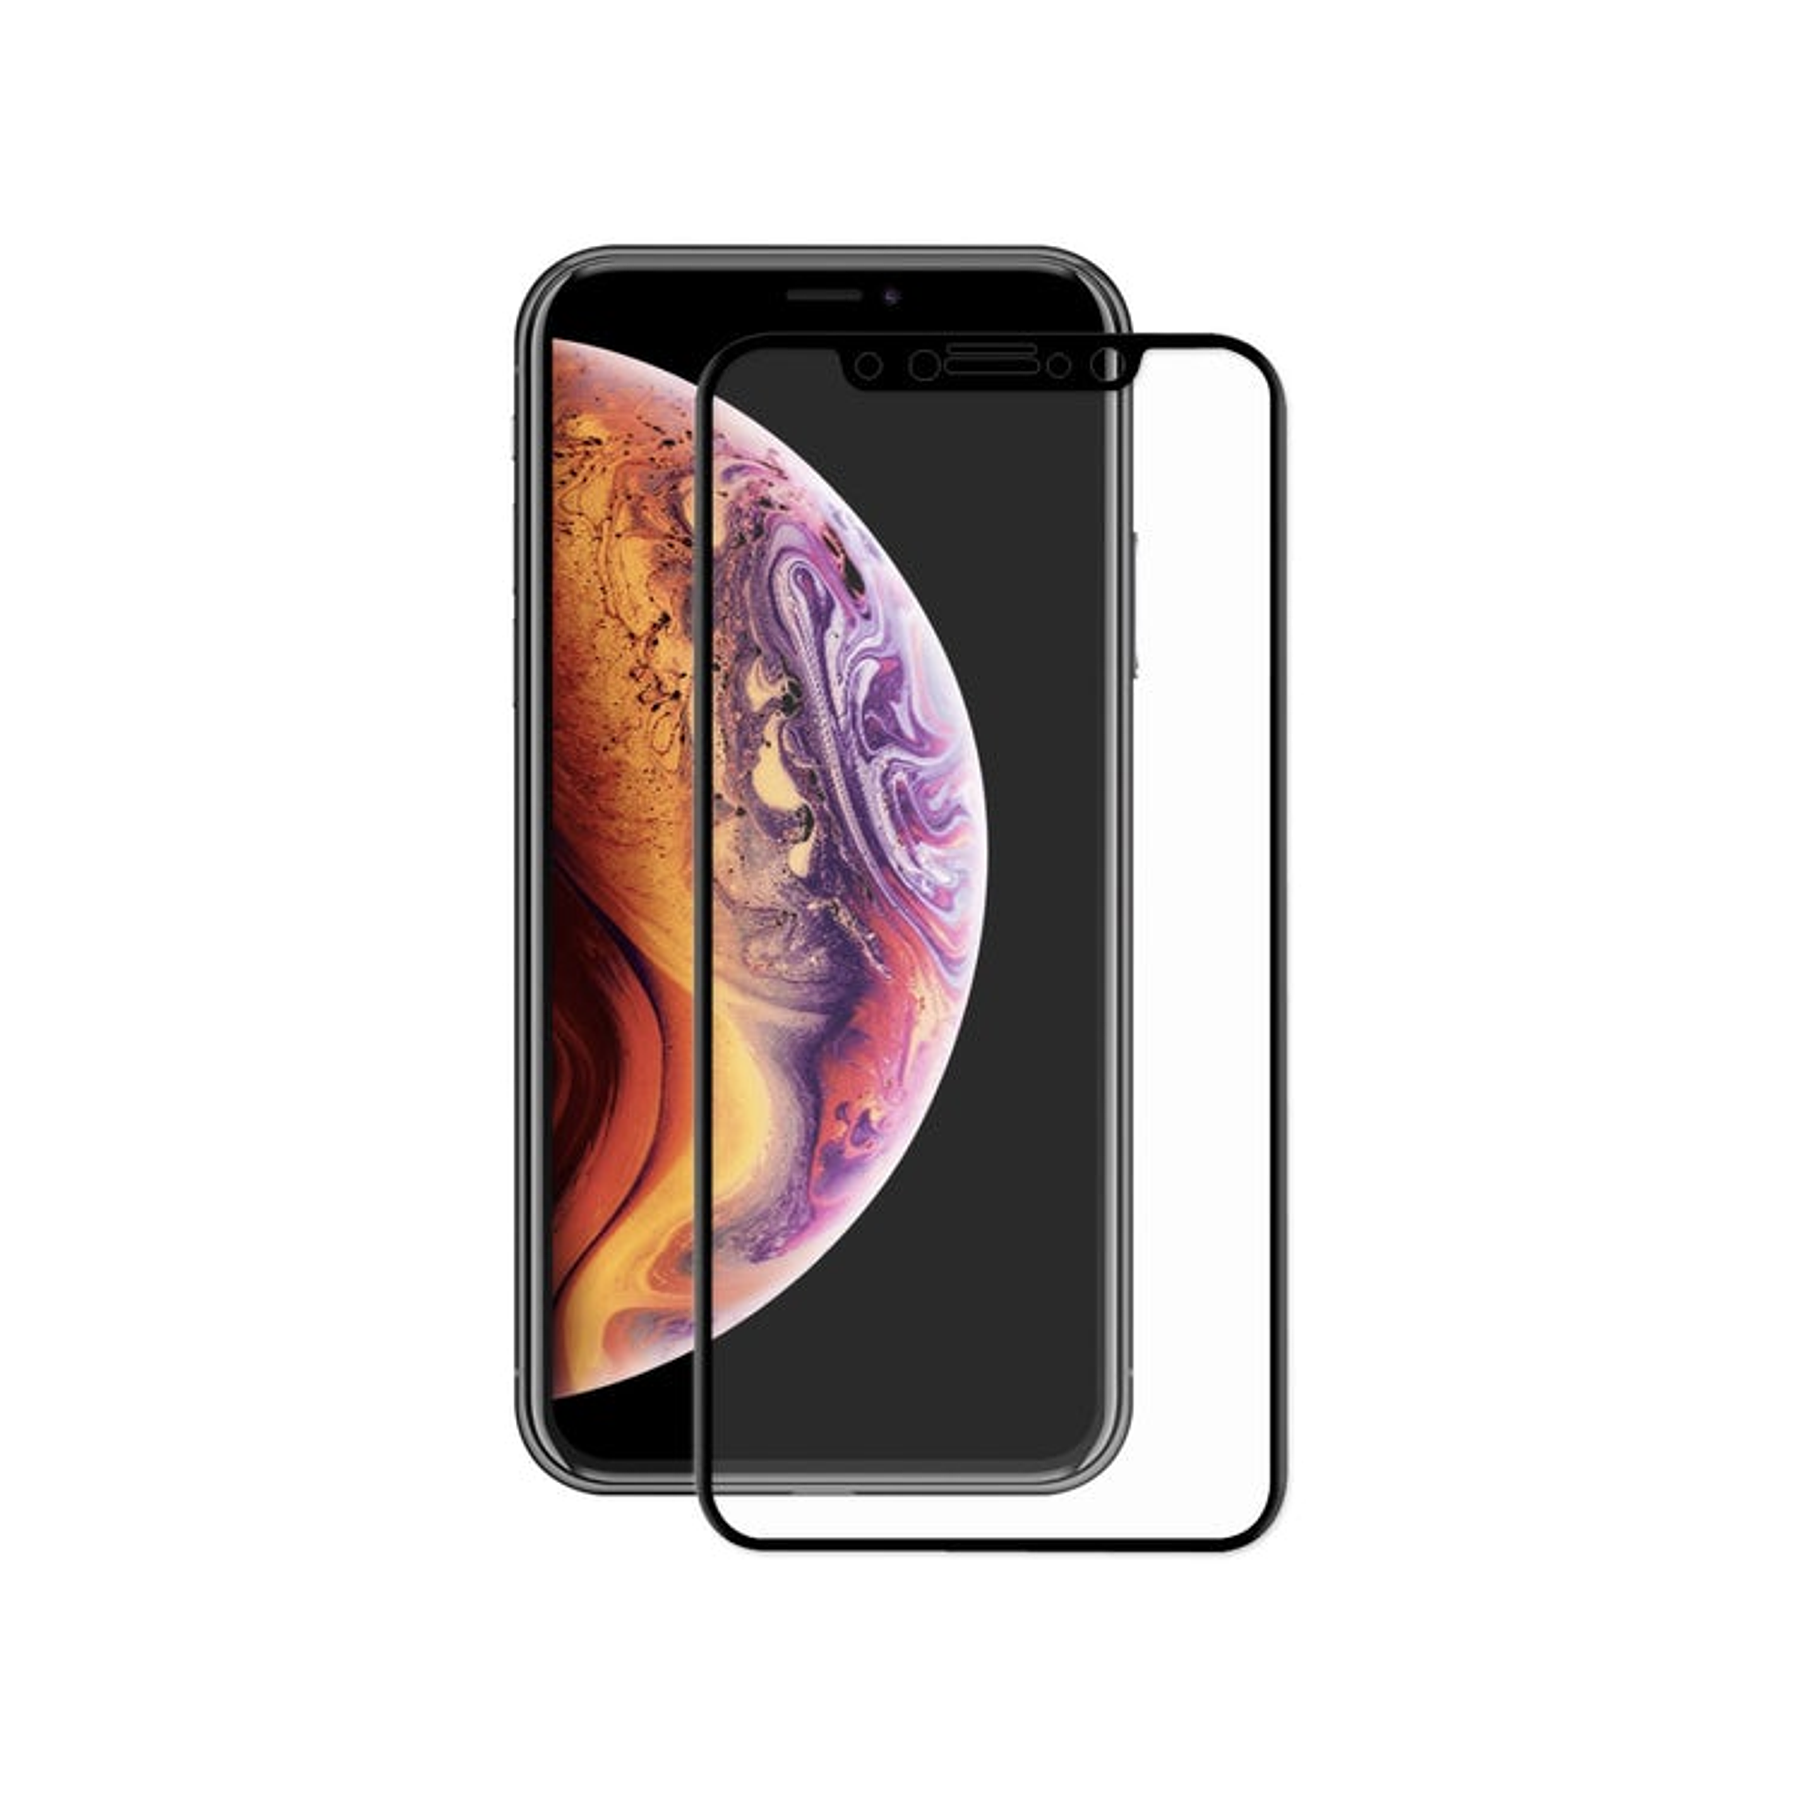 Iphone Xs Max - iPhone 11 PRO MAX - Lámina Vidrio Templado Completa